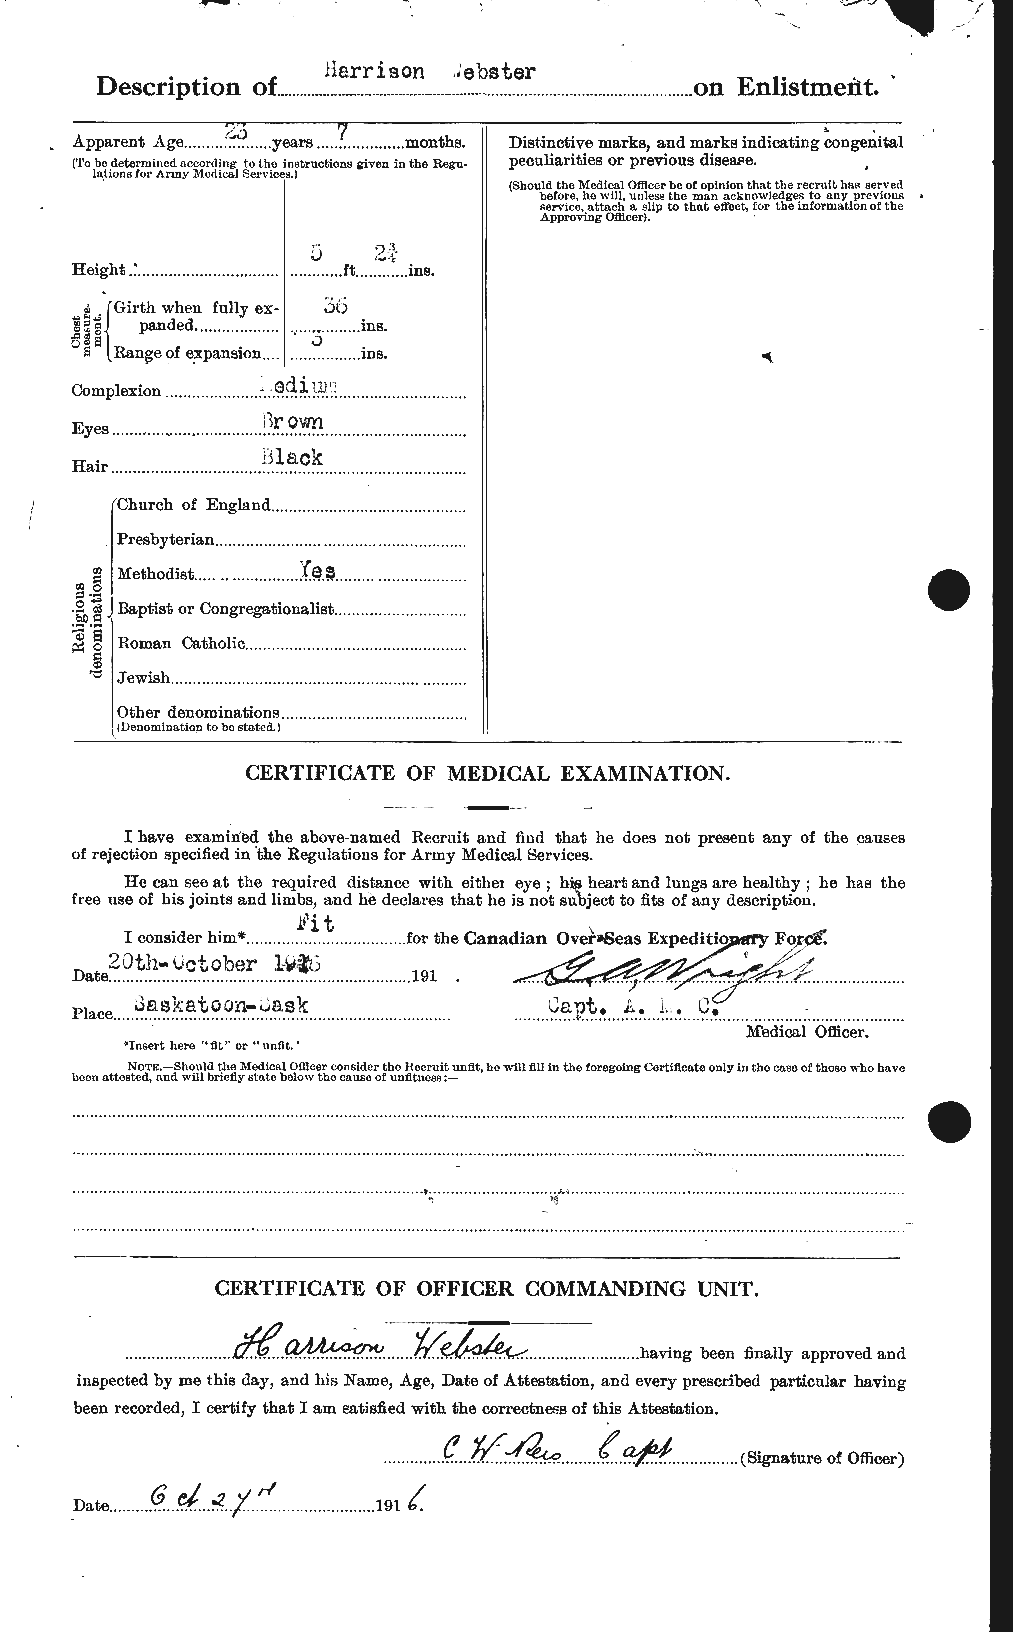 Dossiers du Personnel de la Première Guerre mondiale - CEC 670408b